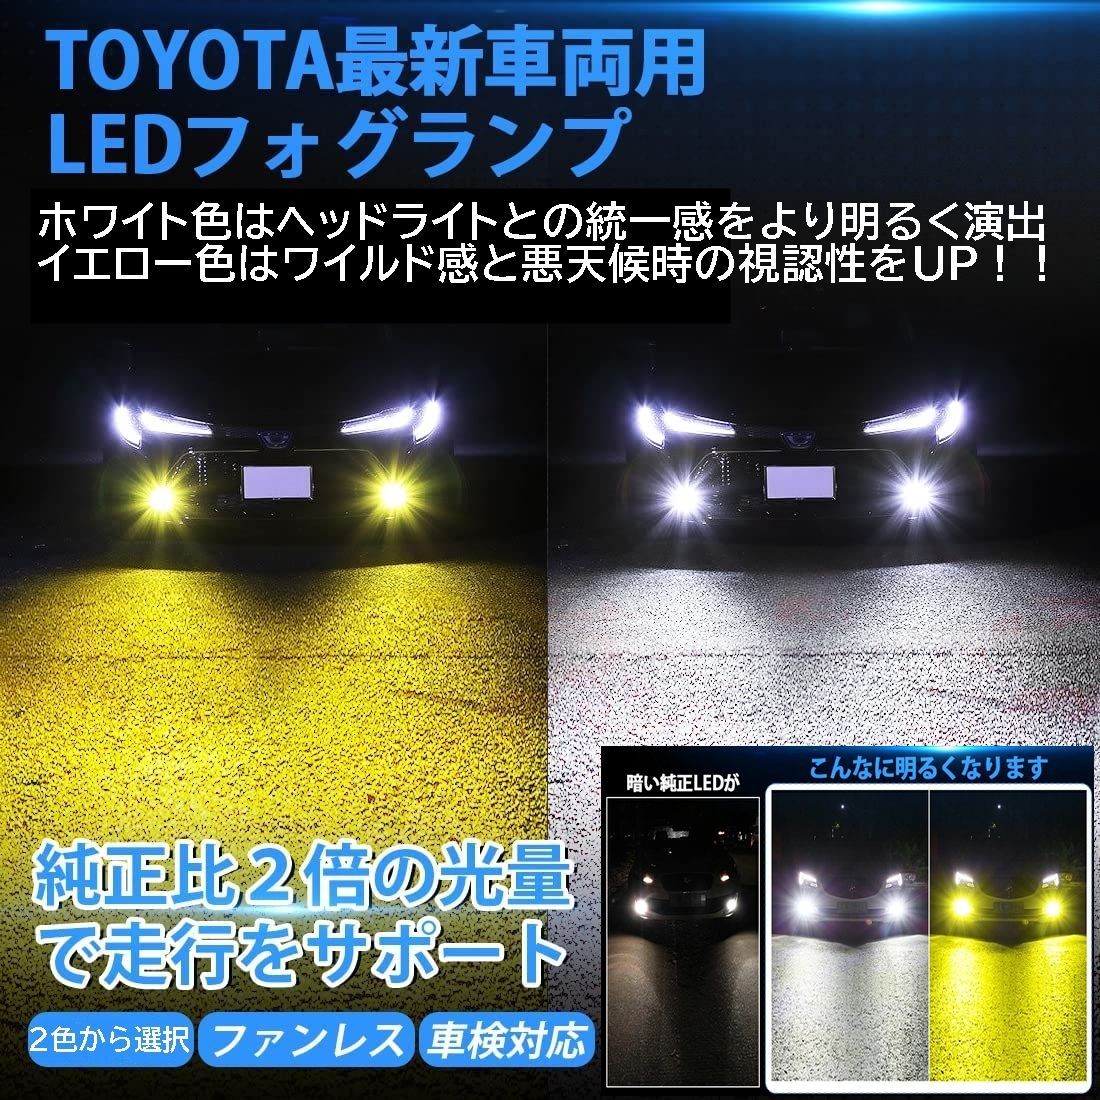 販売日本トヨタ LED フォグランプ 6灯 ホワイト 6000K CREE製 フォグライト ヘッドライト HID ヘッドランプ LEDライト バルブ その他